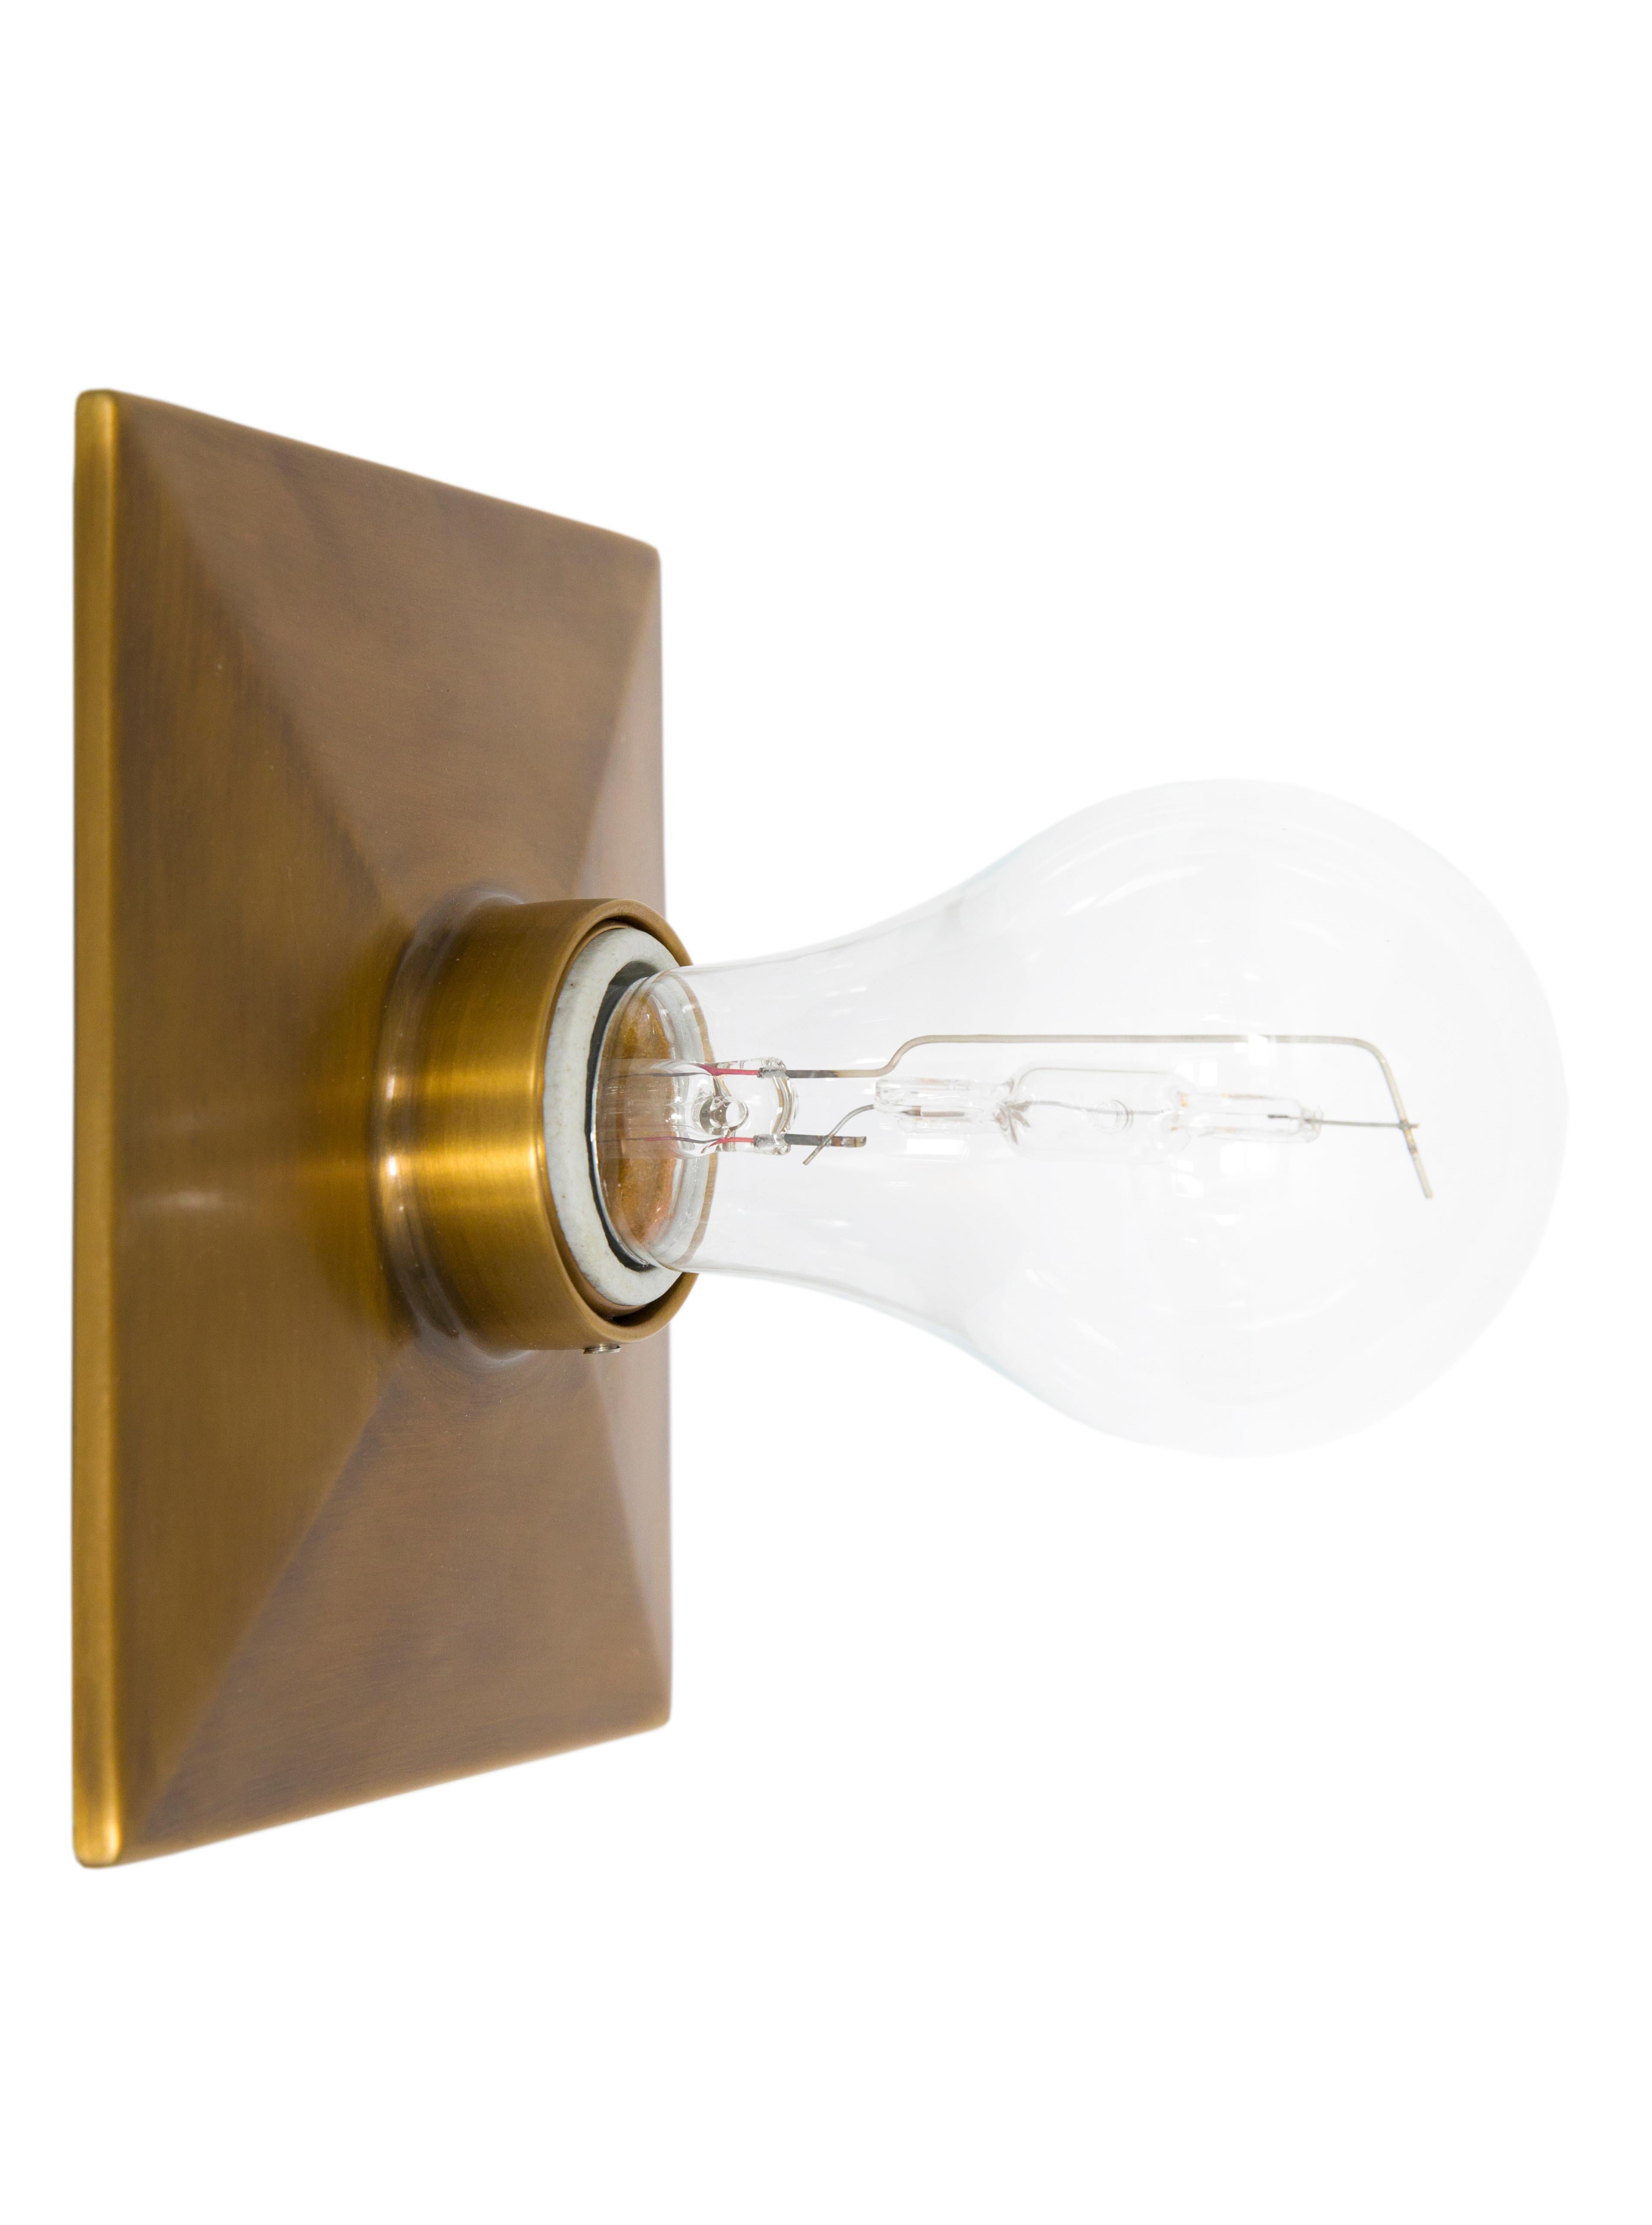 Le Vica Light est une plaque d'encastrement rectangulaire en métal moulé avec un bord biseauté et une douille en porcelaine. Le luminaire peut être fixé au mur ou au plafond. 

La puissance maximale recommandée est de 60 W. La lampe Vica est